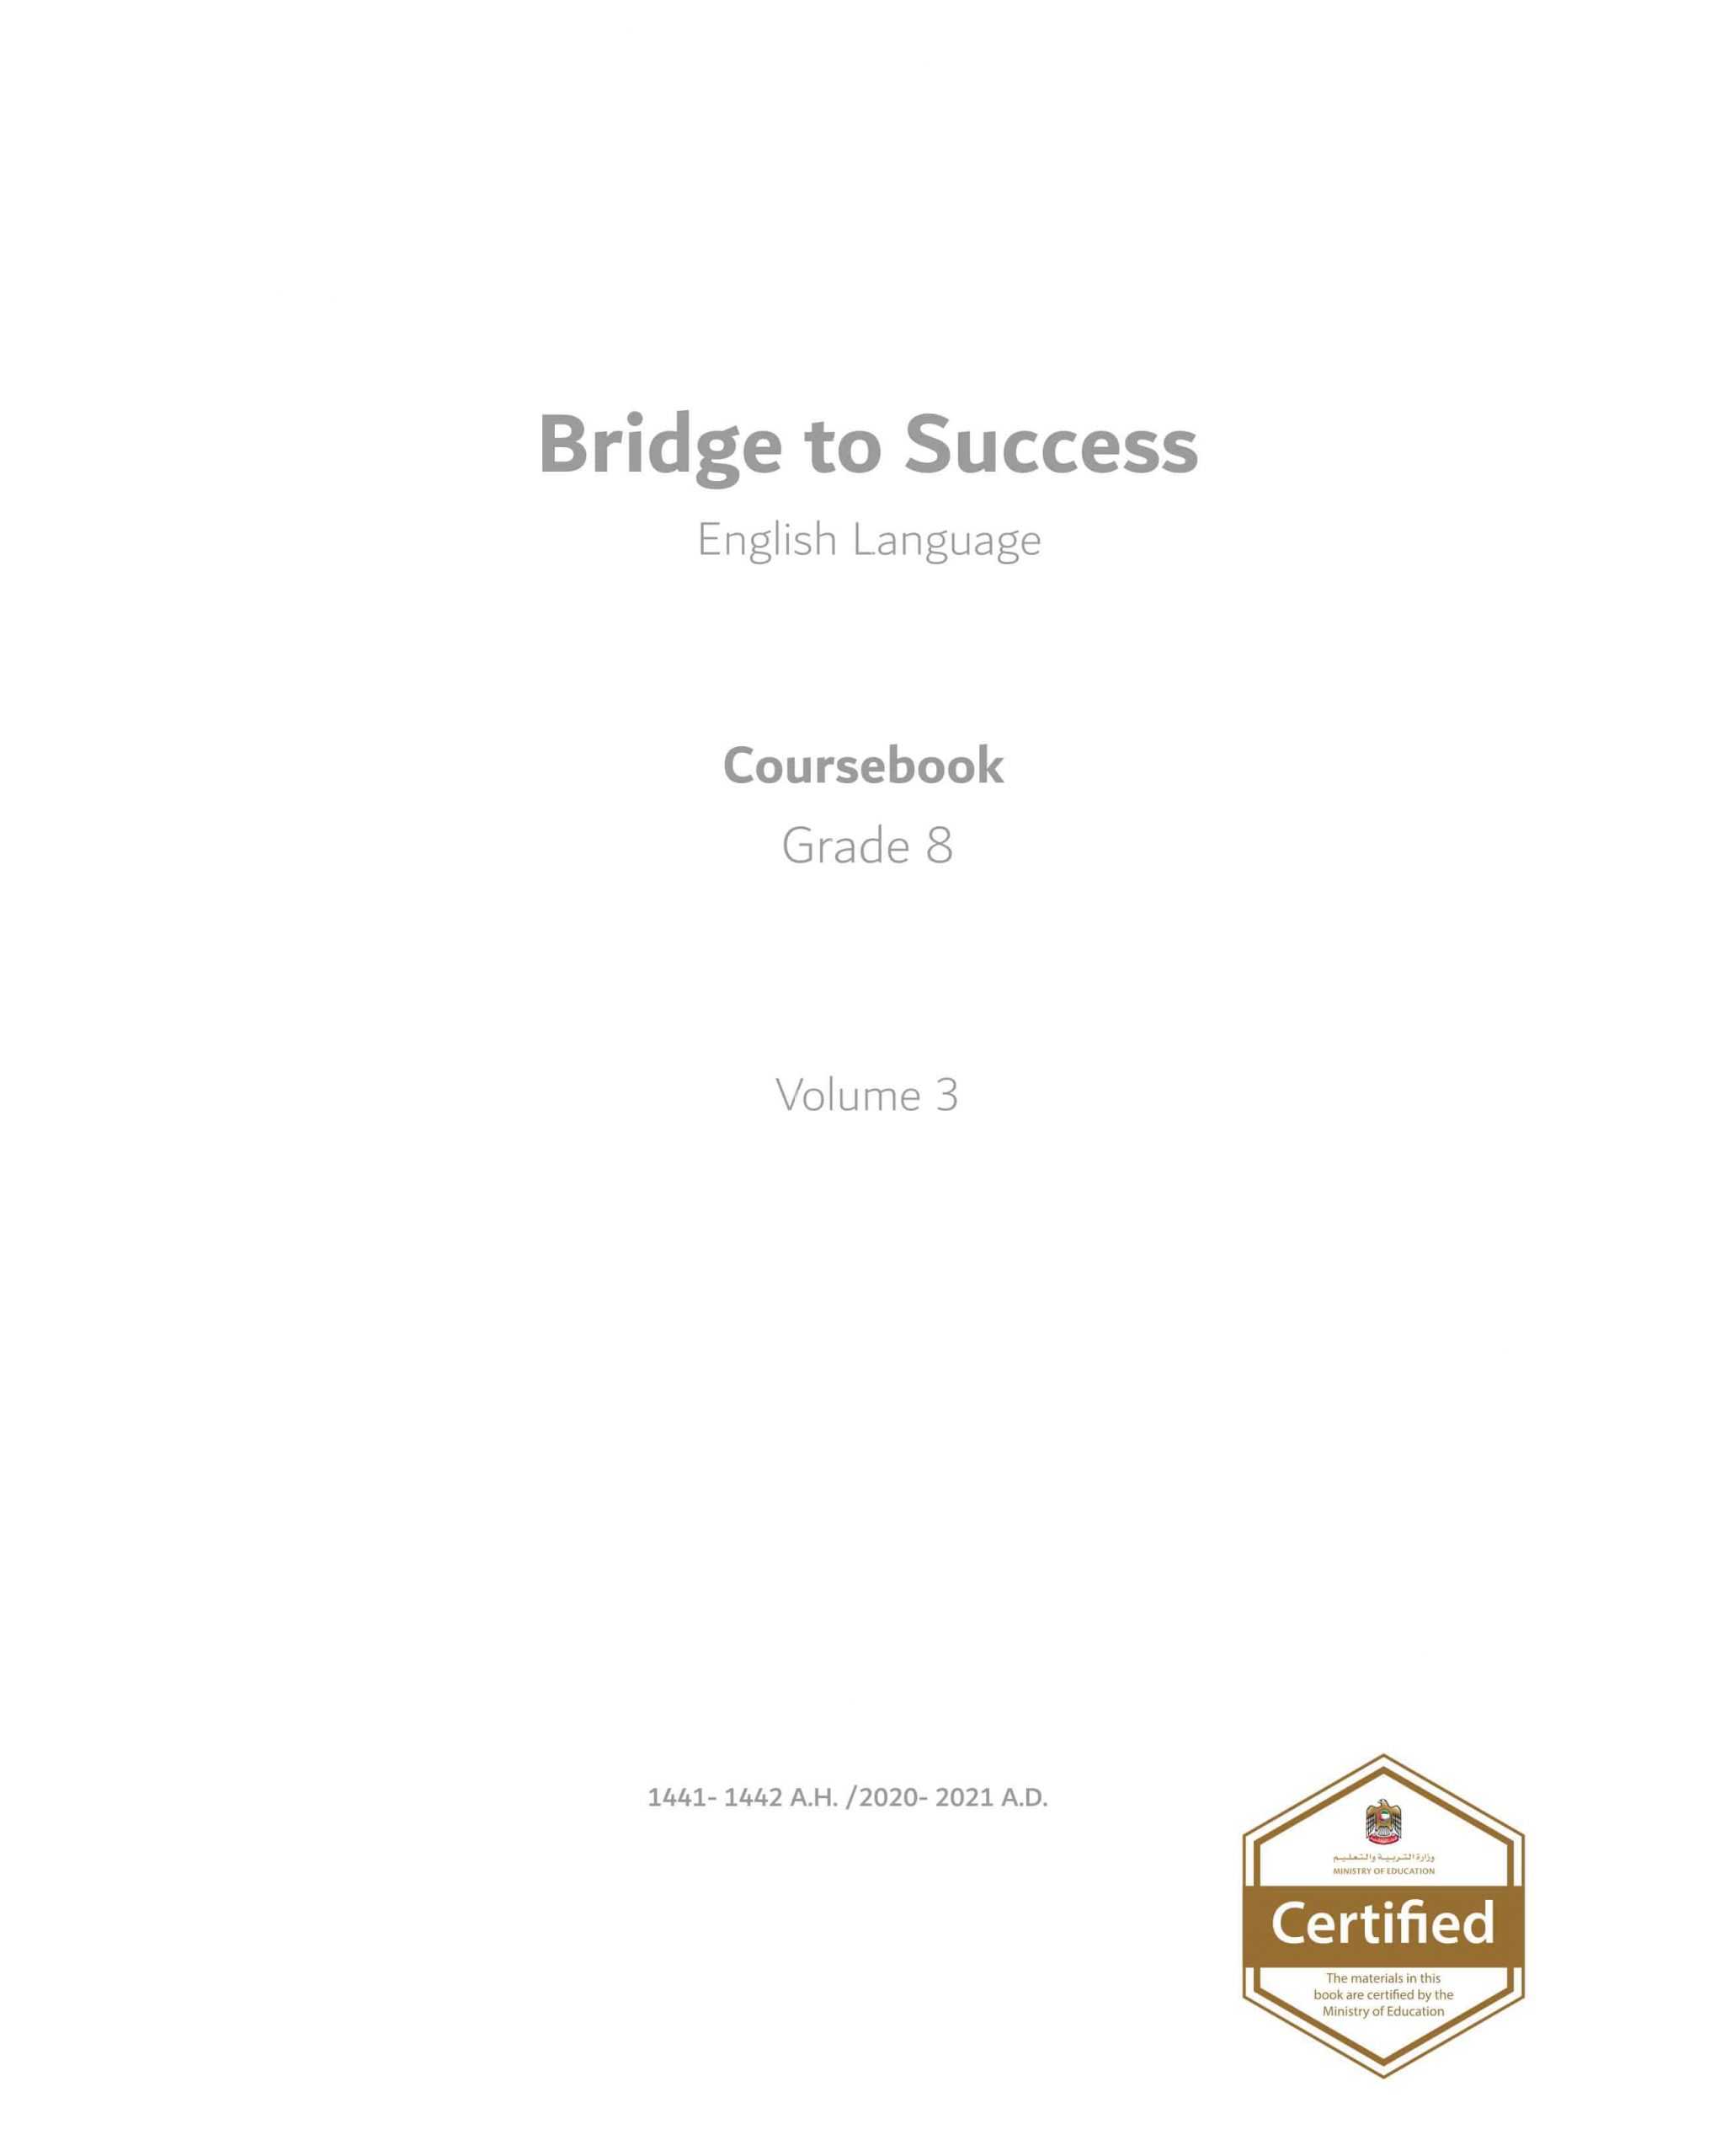 كتاب الطالب Course book الفصل الدراسي الثالث 2020-2021 الصف الثامن مادة اللغة الإنجليزية